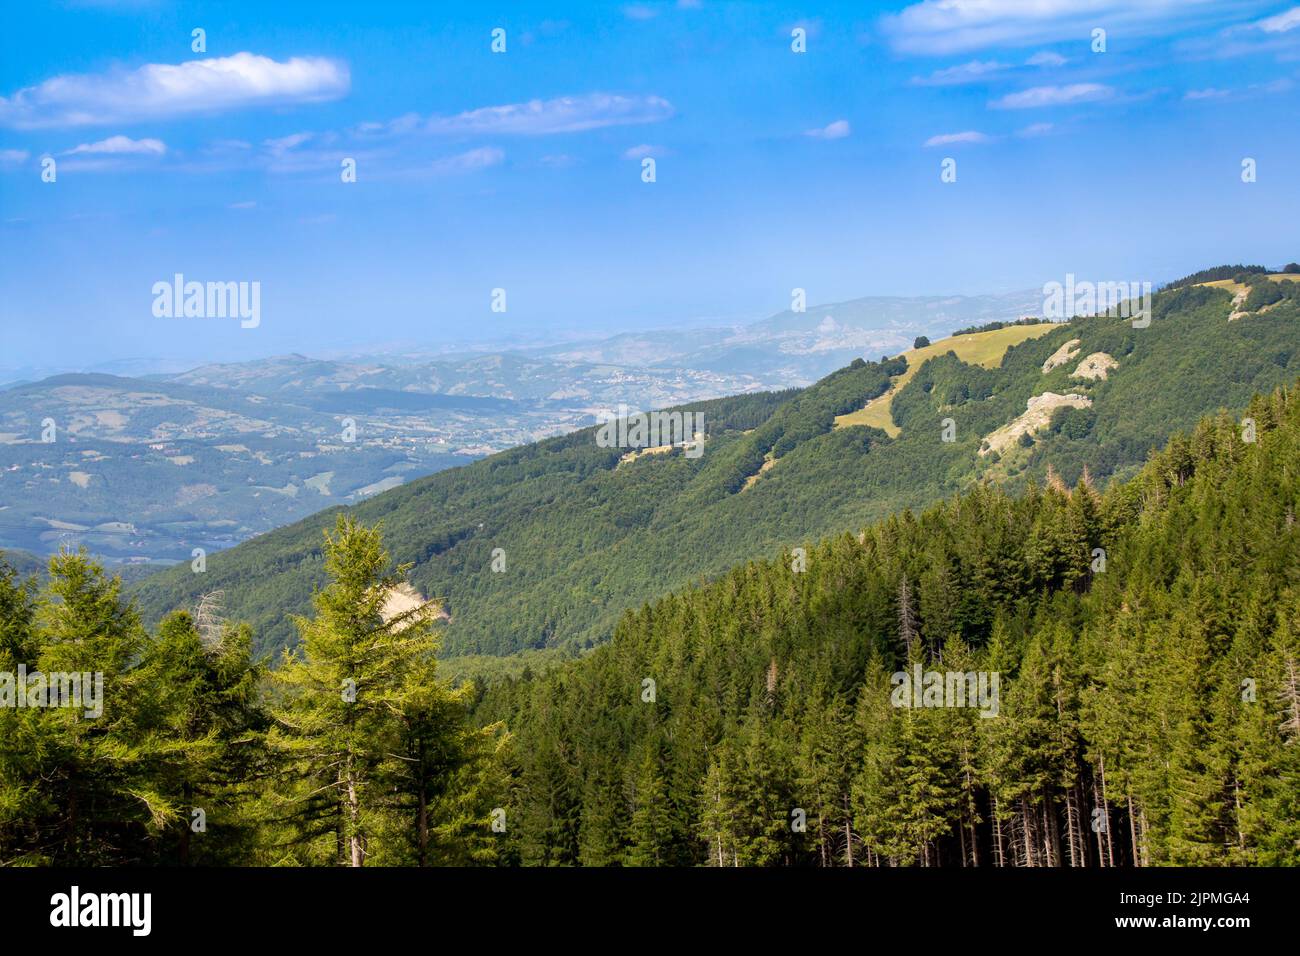 Bella vista panoramica in estate sul Monte Cimone nei pressi del Lago di Nymfa. Paesaggio dell'Appennino Tosco-Emiliano di Sestola, provincia di Modena, Italia Foto Stock